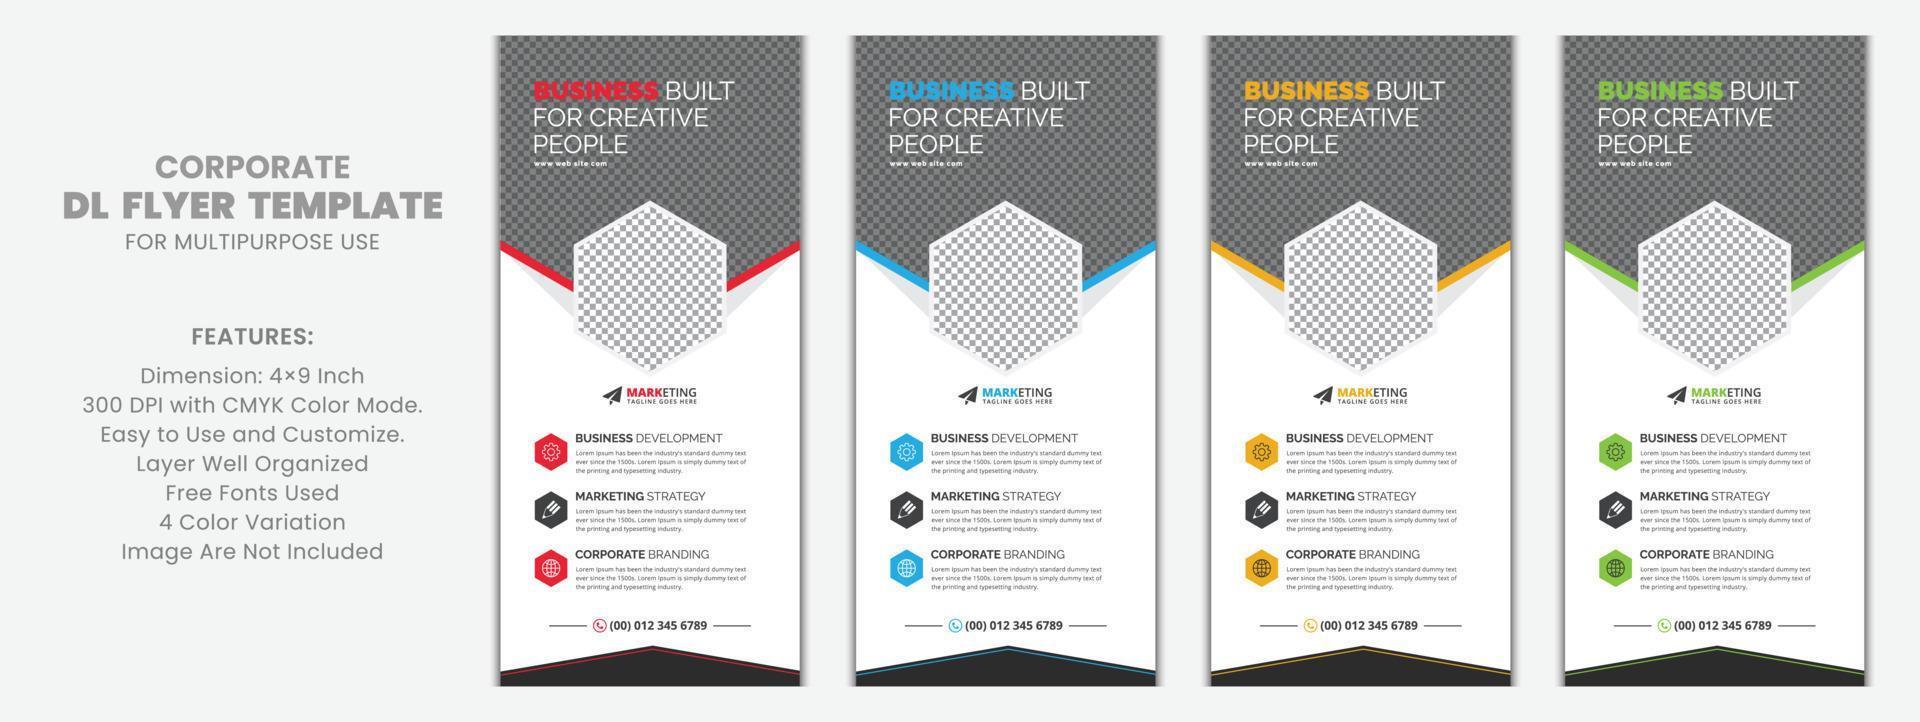 Corporate DL Flyer Rack Card Template Vektordesign für Business, Marketing, Werbung, Mehrzwecknutzung mit roten, blauen, gelben und grünen Farbvariationen vektor